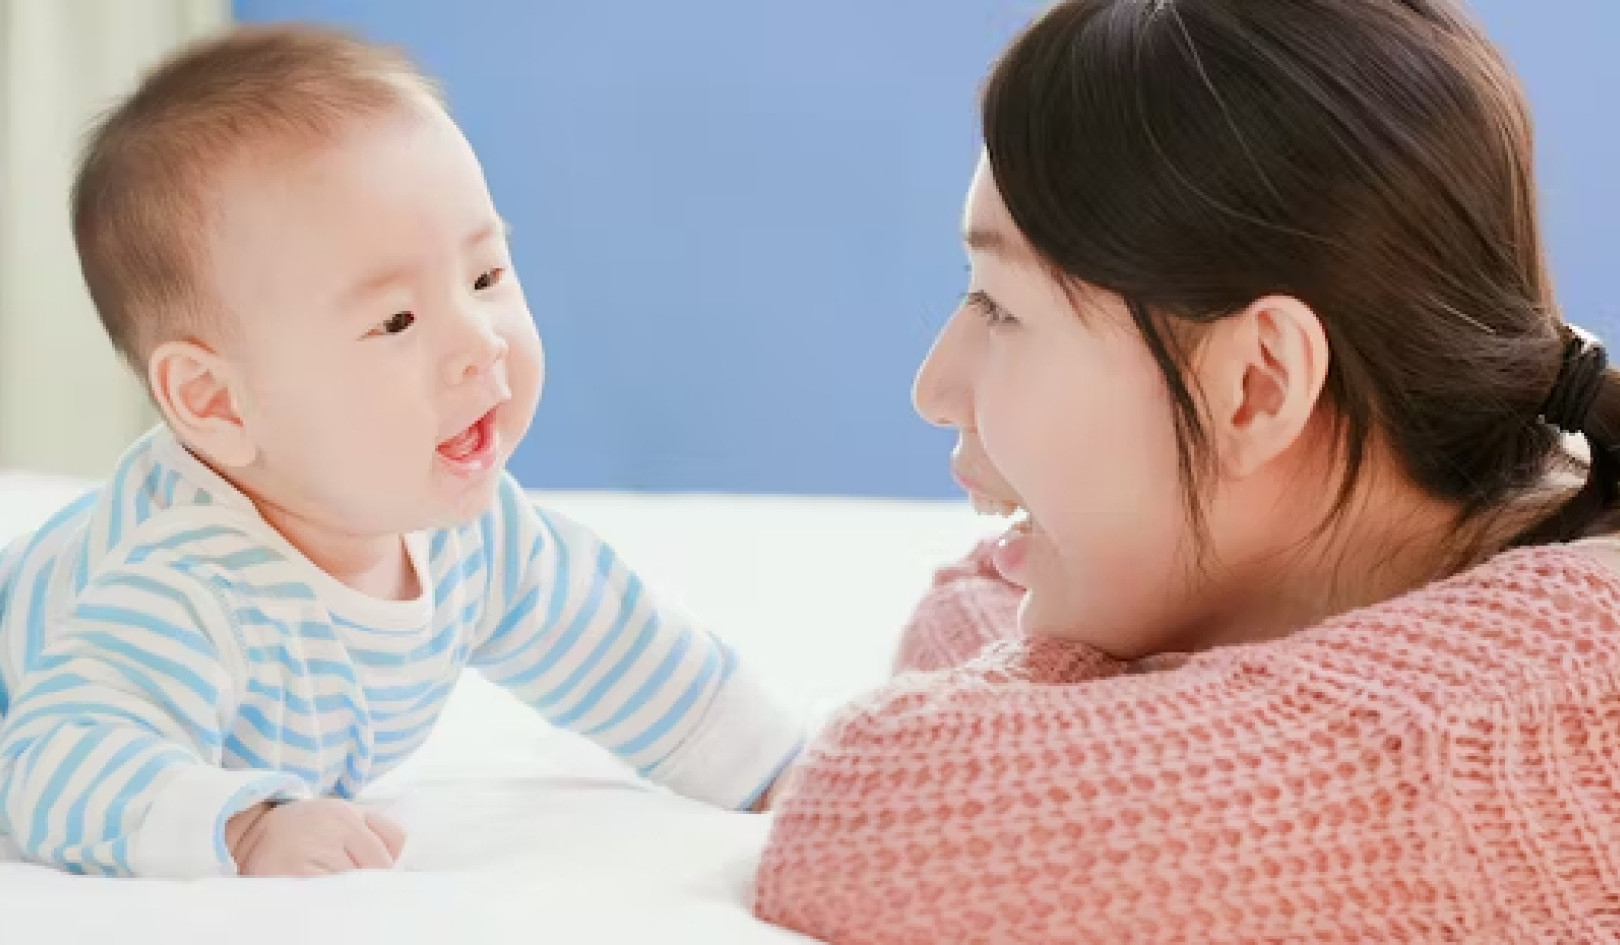 Conversar com bebês pode contribuir para o desenvolvimento do cérebro – veja como fazer isso